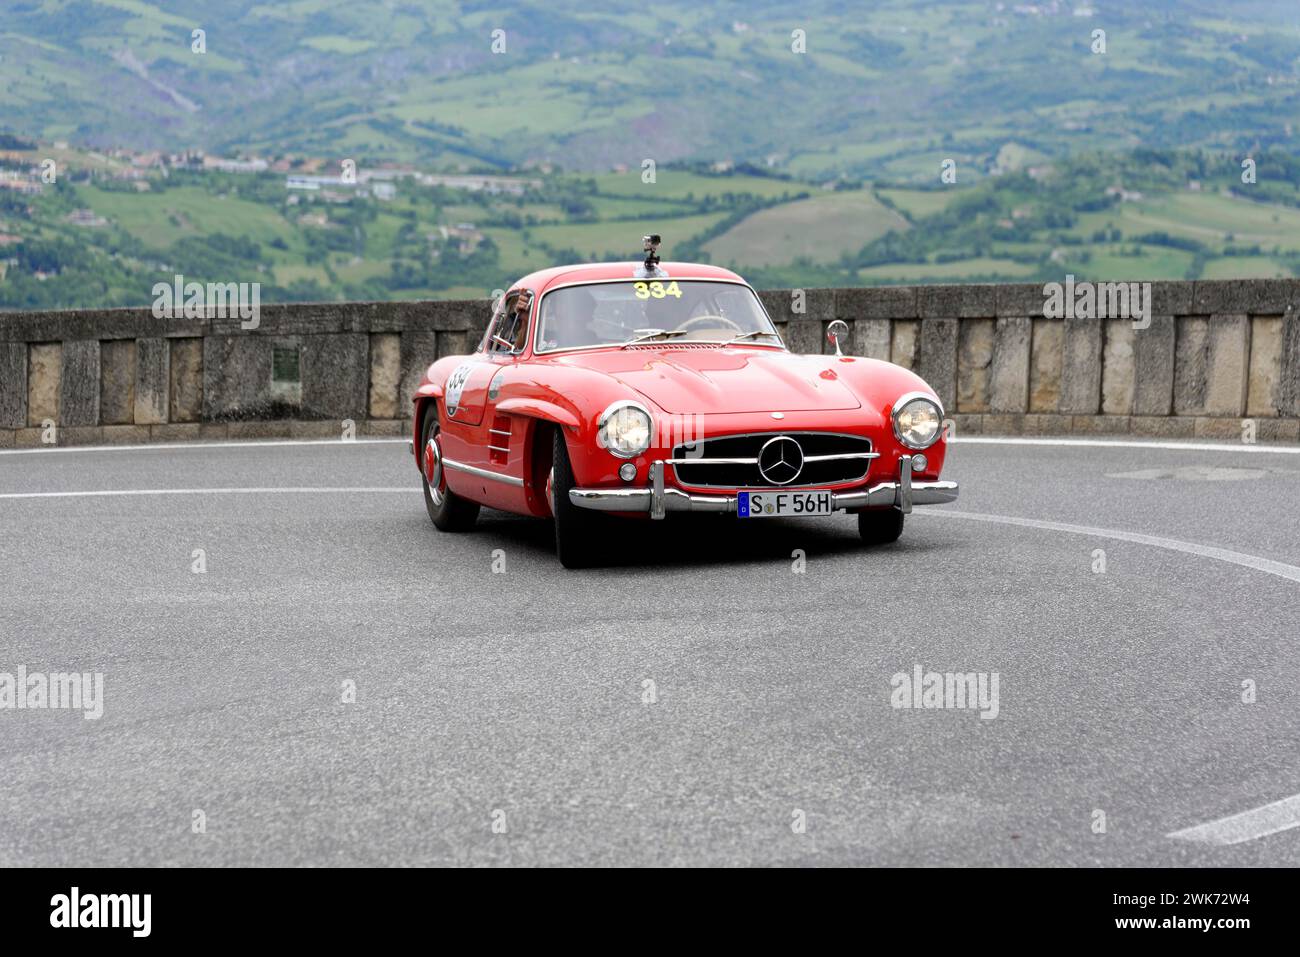 Mille miglia 2014 o 1000 miglia, No. 334, Mercedes-Benz 300 SL W 198, costruito nel 1955 gara di auto d'epoca, San Marino, Italia Foto Stock